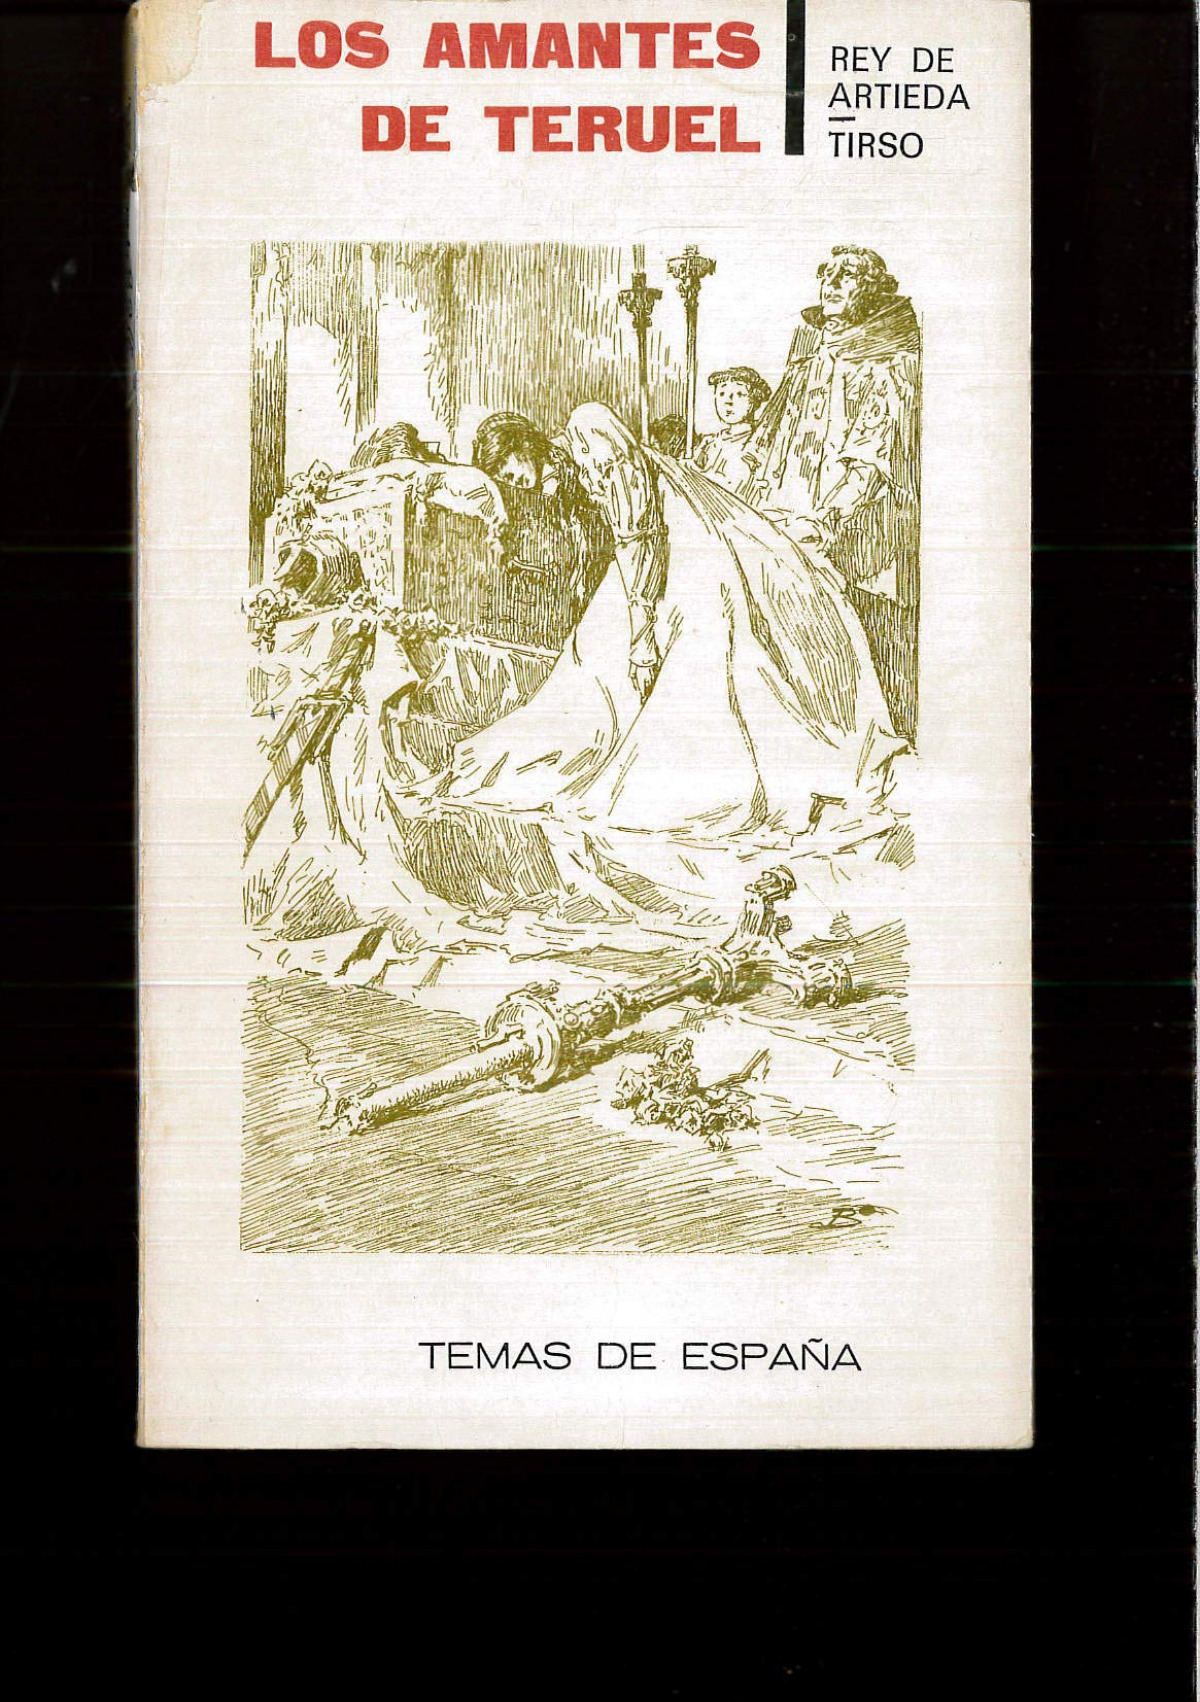 Los amantes / los amantes de teruel - Rey De Artieda, Andres / Molina, Tirso D